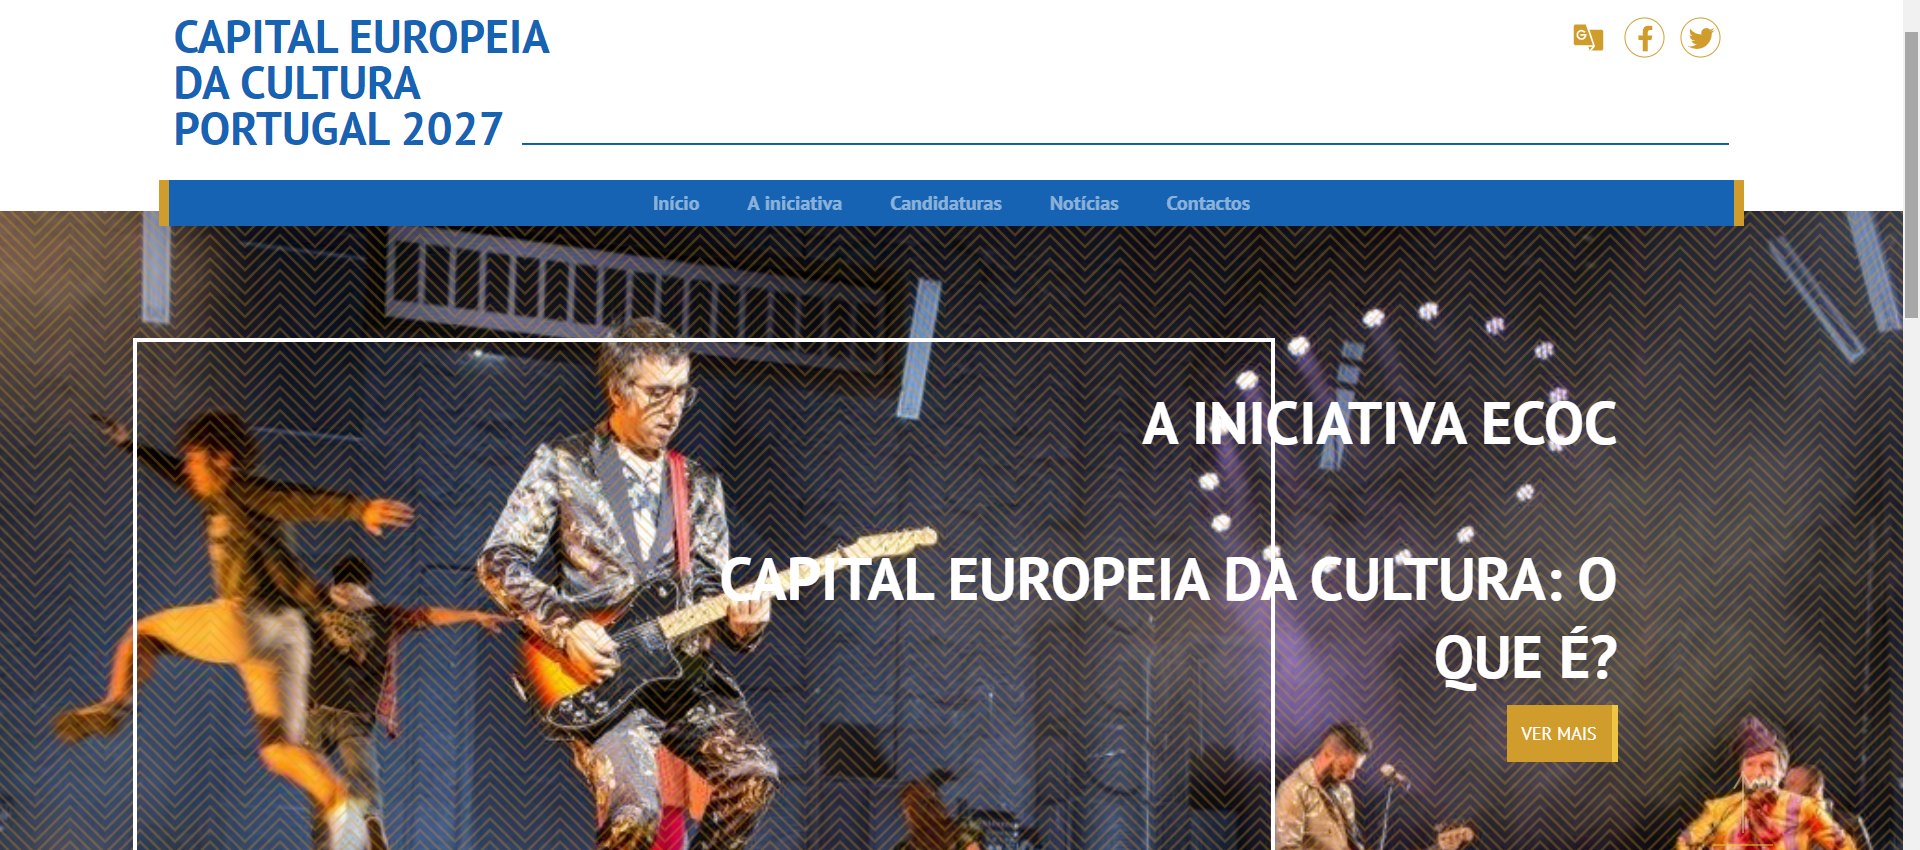 Capital Europeia da Cultura Portugal 2027: está lançada a competição nacional